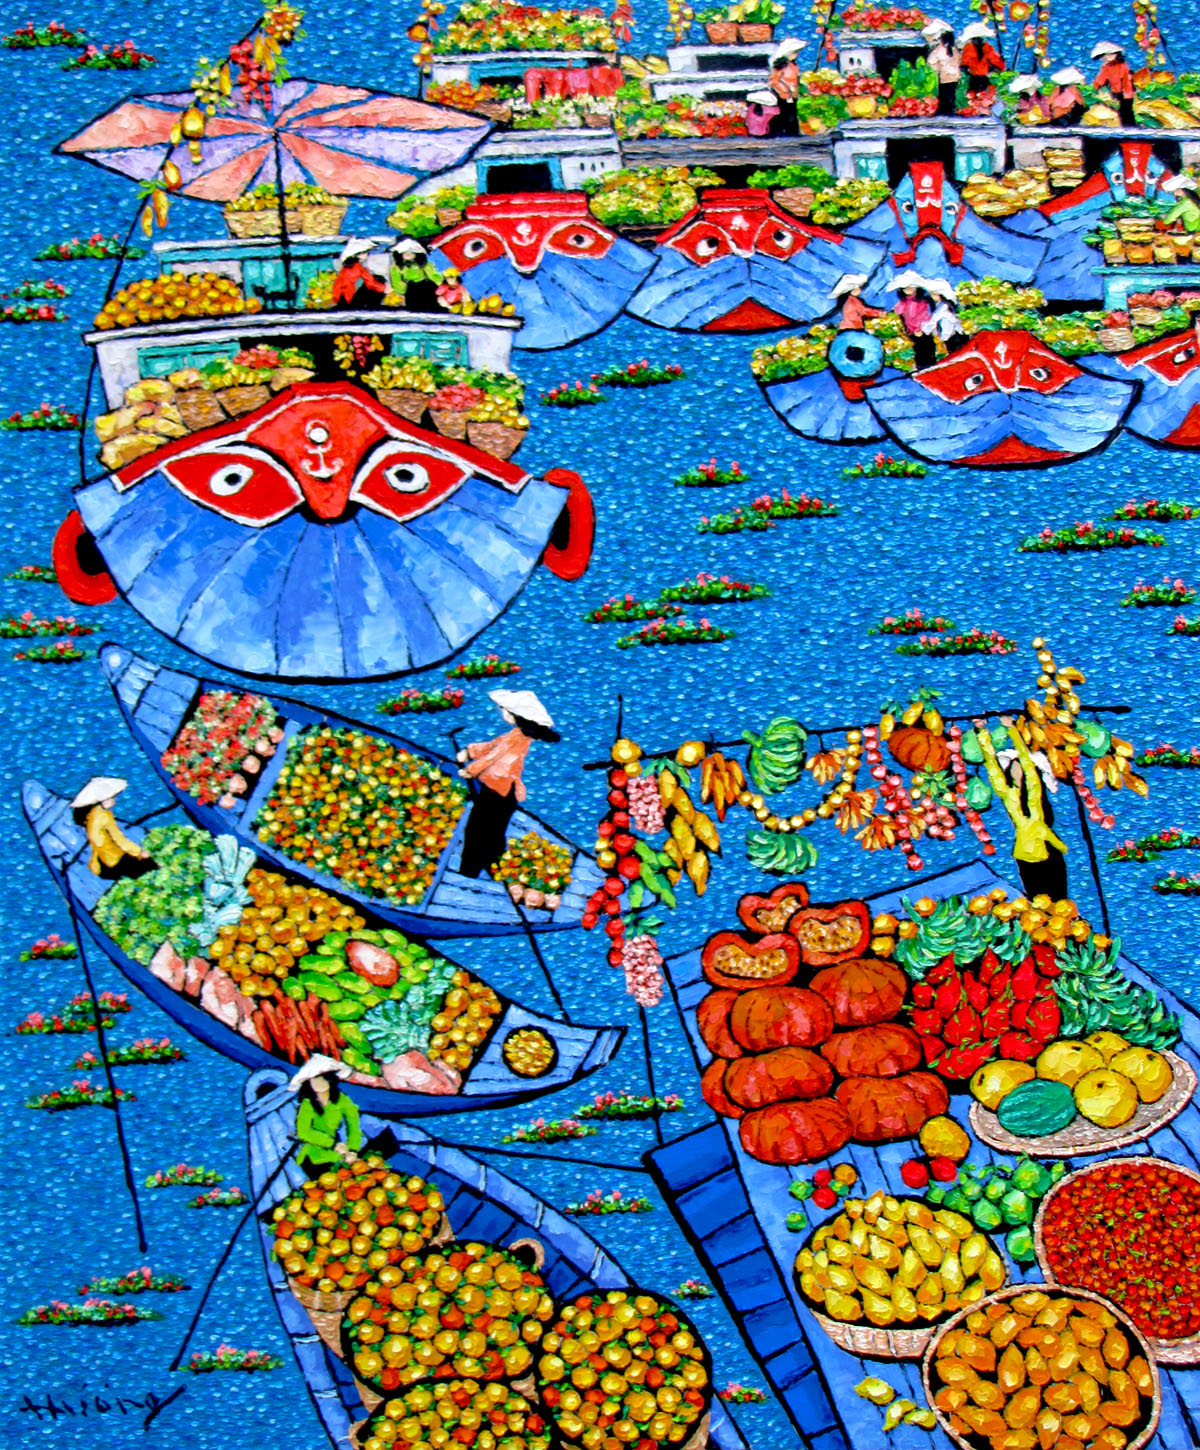 Tran Thu Huong-Floating market-100x120cm